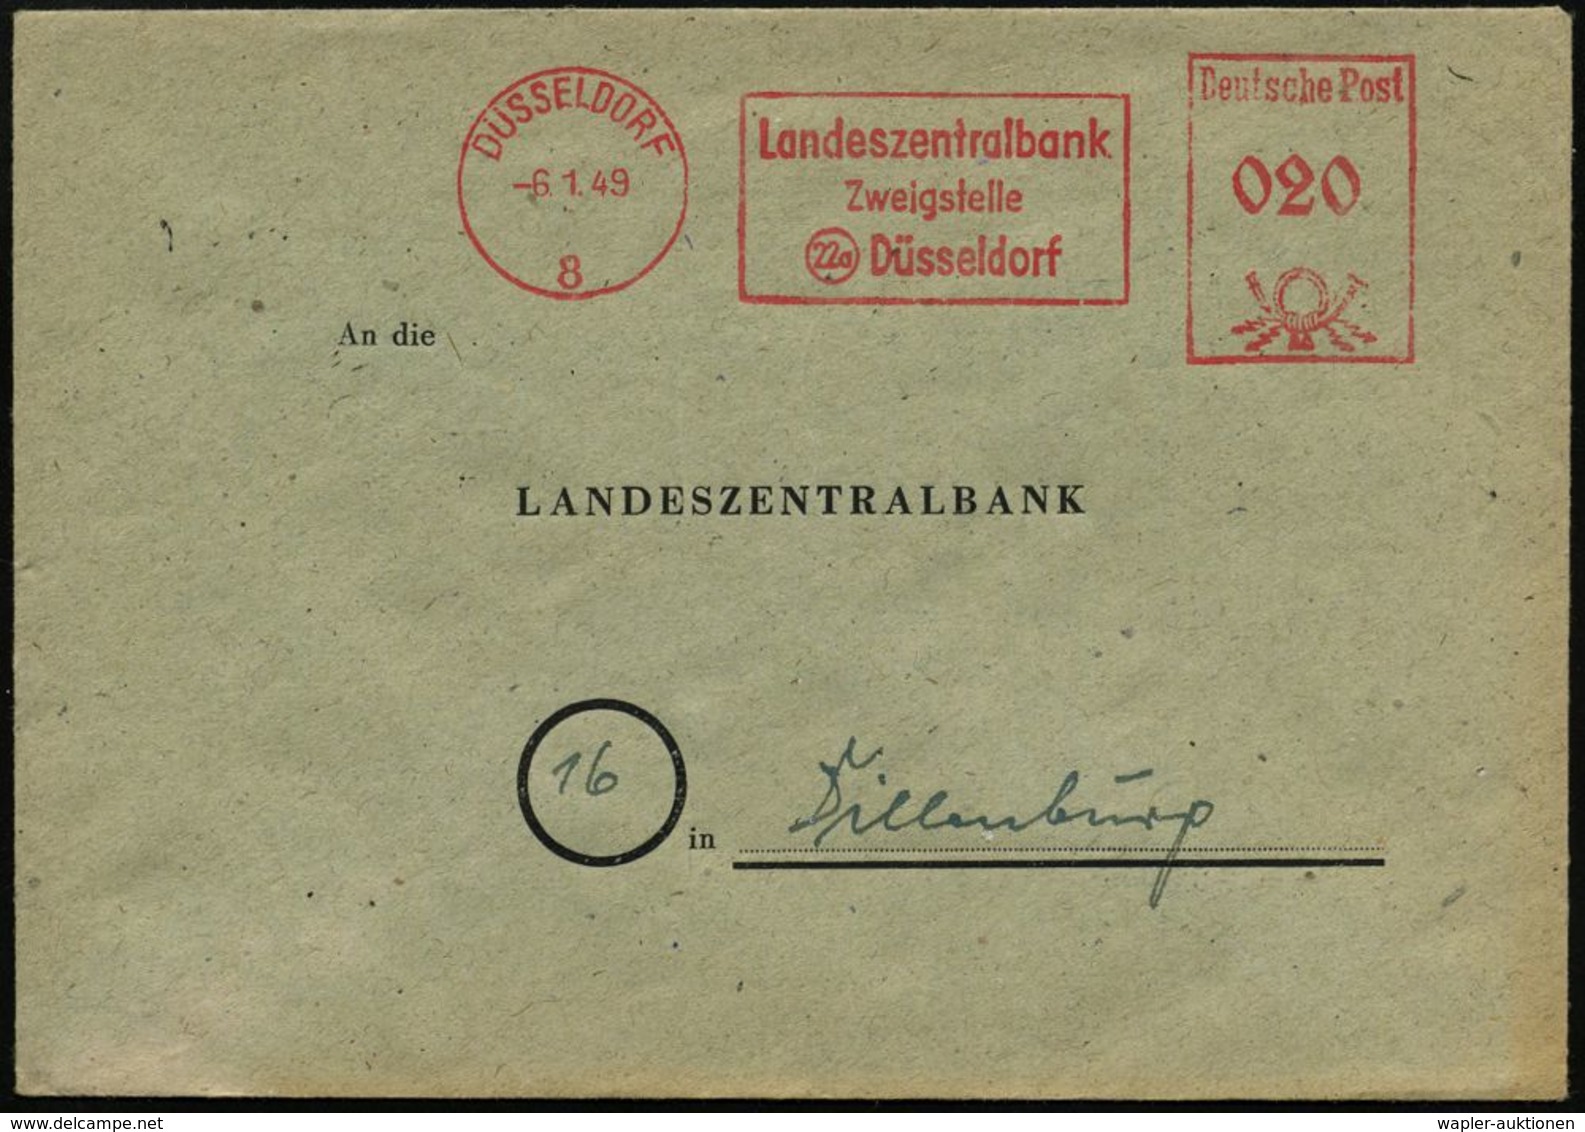 STAATSBANKEN / REICHSBANK / BUNDESBANK : DÜSSELDORF/ 8/ Landeszentralbank/ Zweigstelle 1949 (6.1.) AFS (nach Währungsref - Ohne Zuordnung